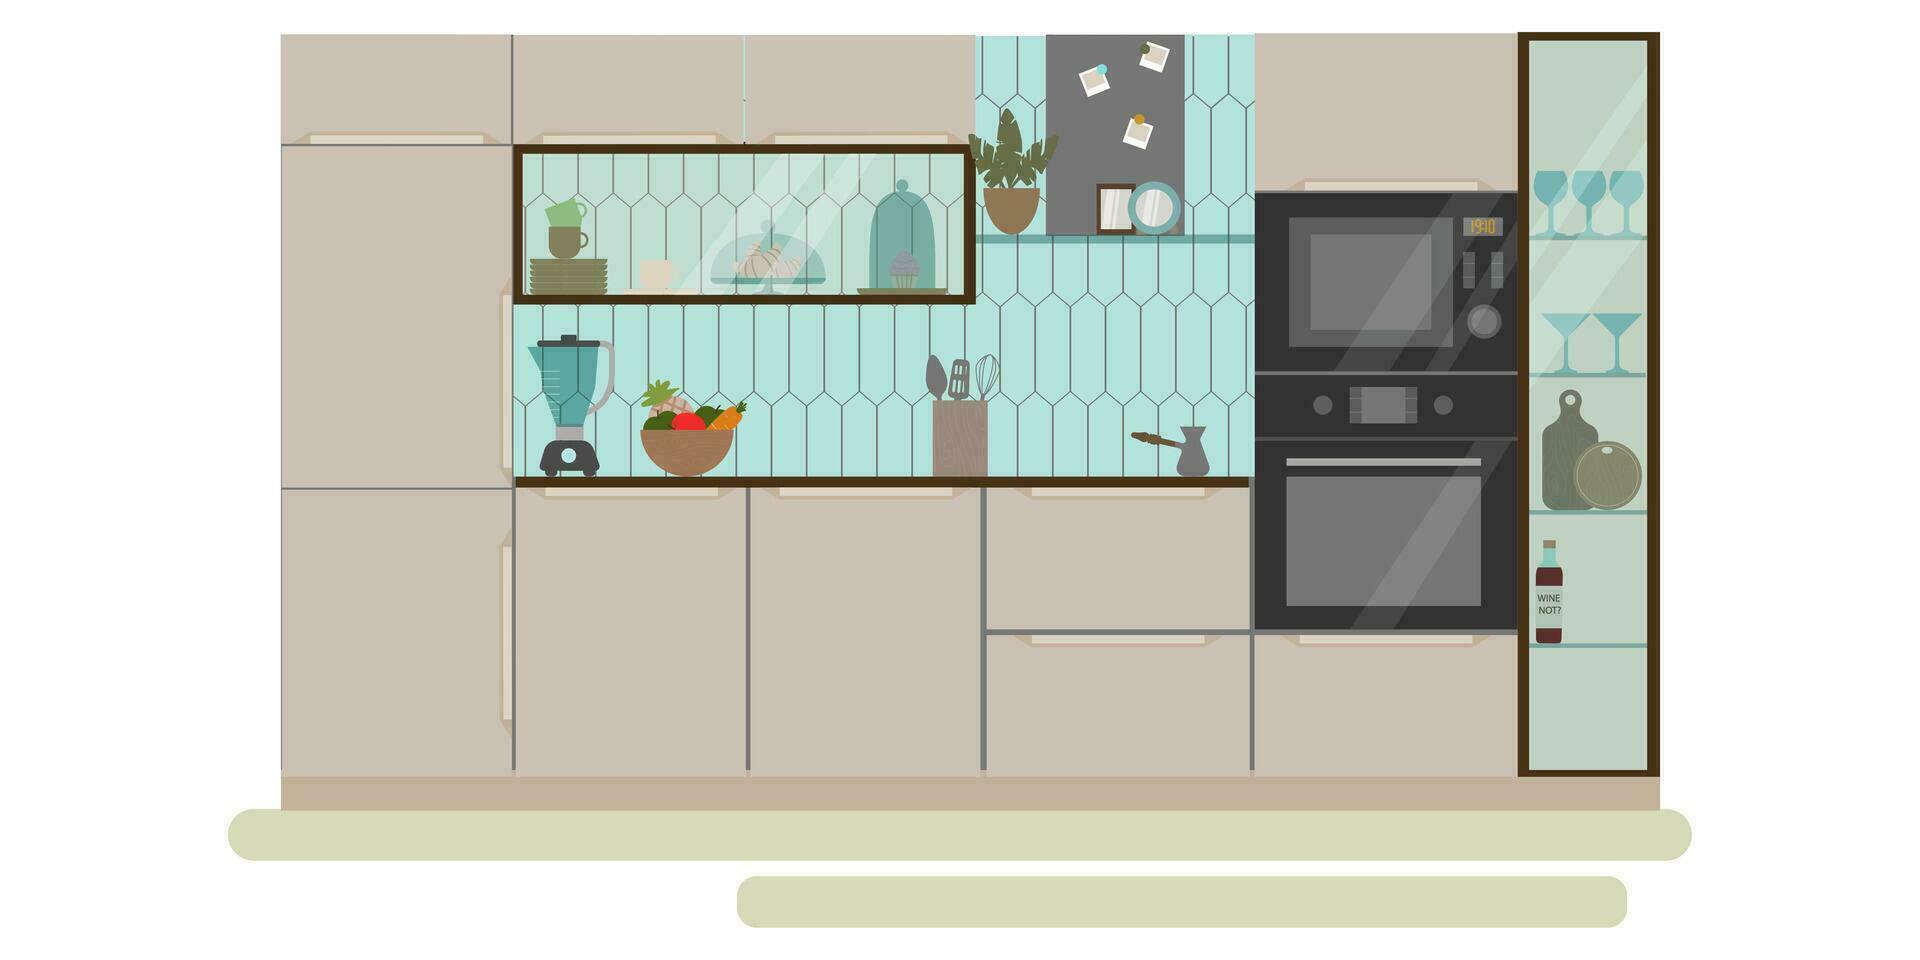 moderno cocina interior vacío No personas casa habitación plano vector ilustración